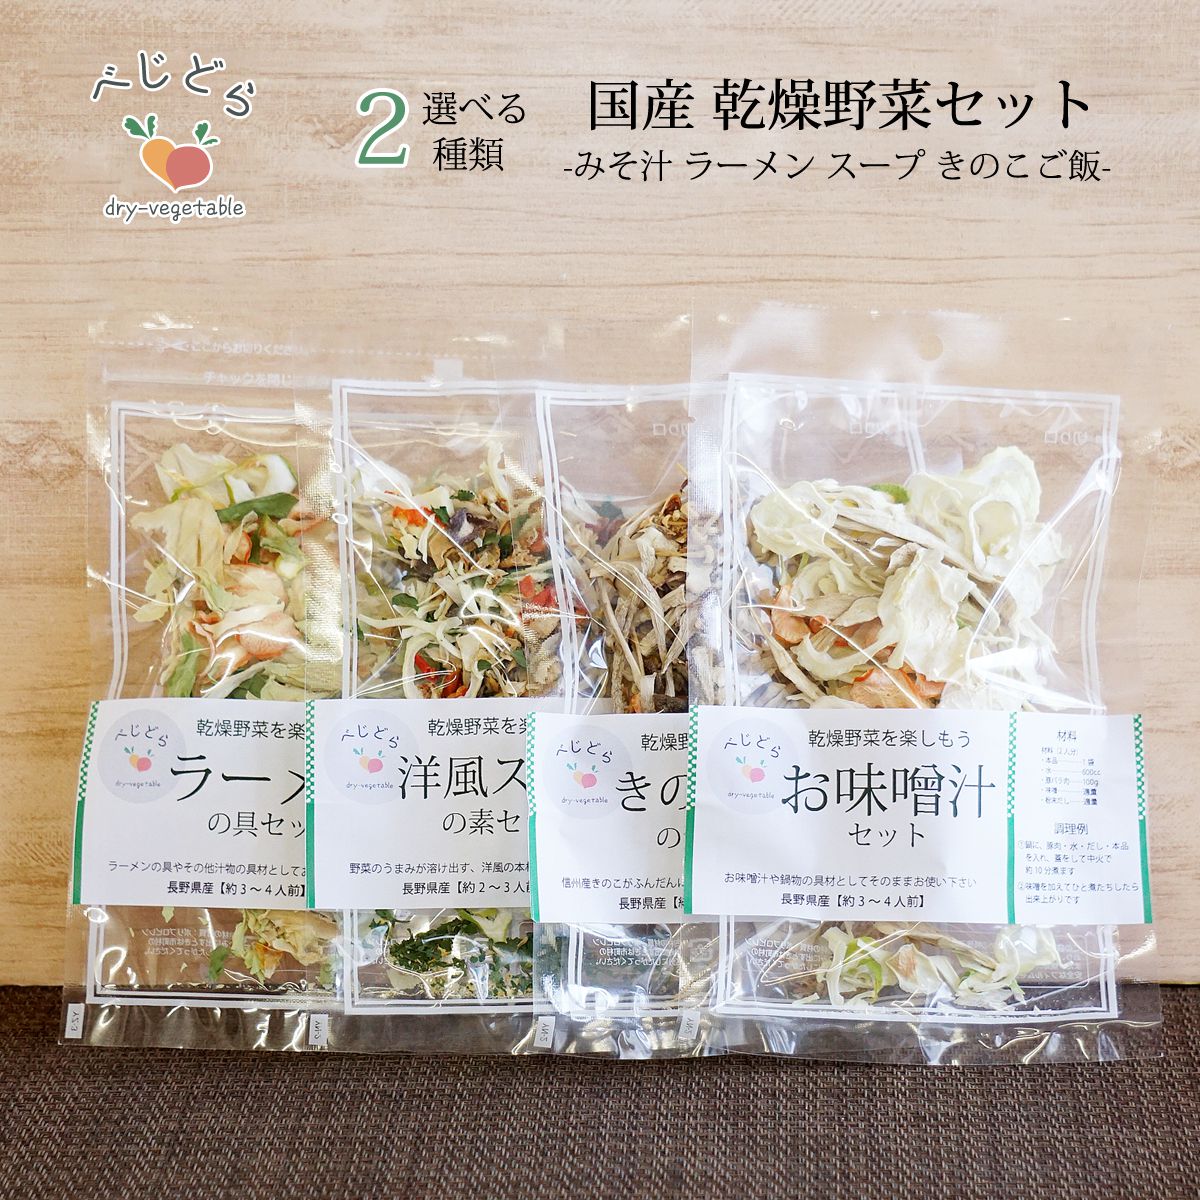 送料無料 1000円 ポッキリ 乾燥野菜 国産 乾燥野菜ミックス 無添加 選べる 2点 セット :yasai2:わらいみらい - 通販 -  Yahoo!ショッピング